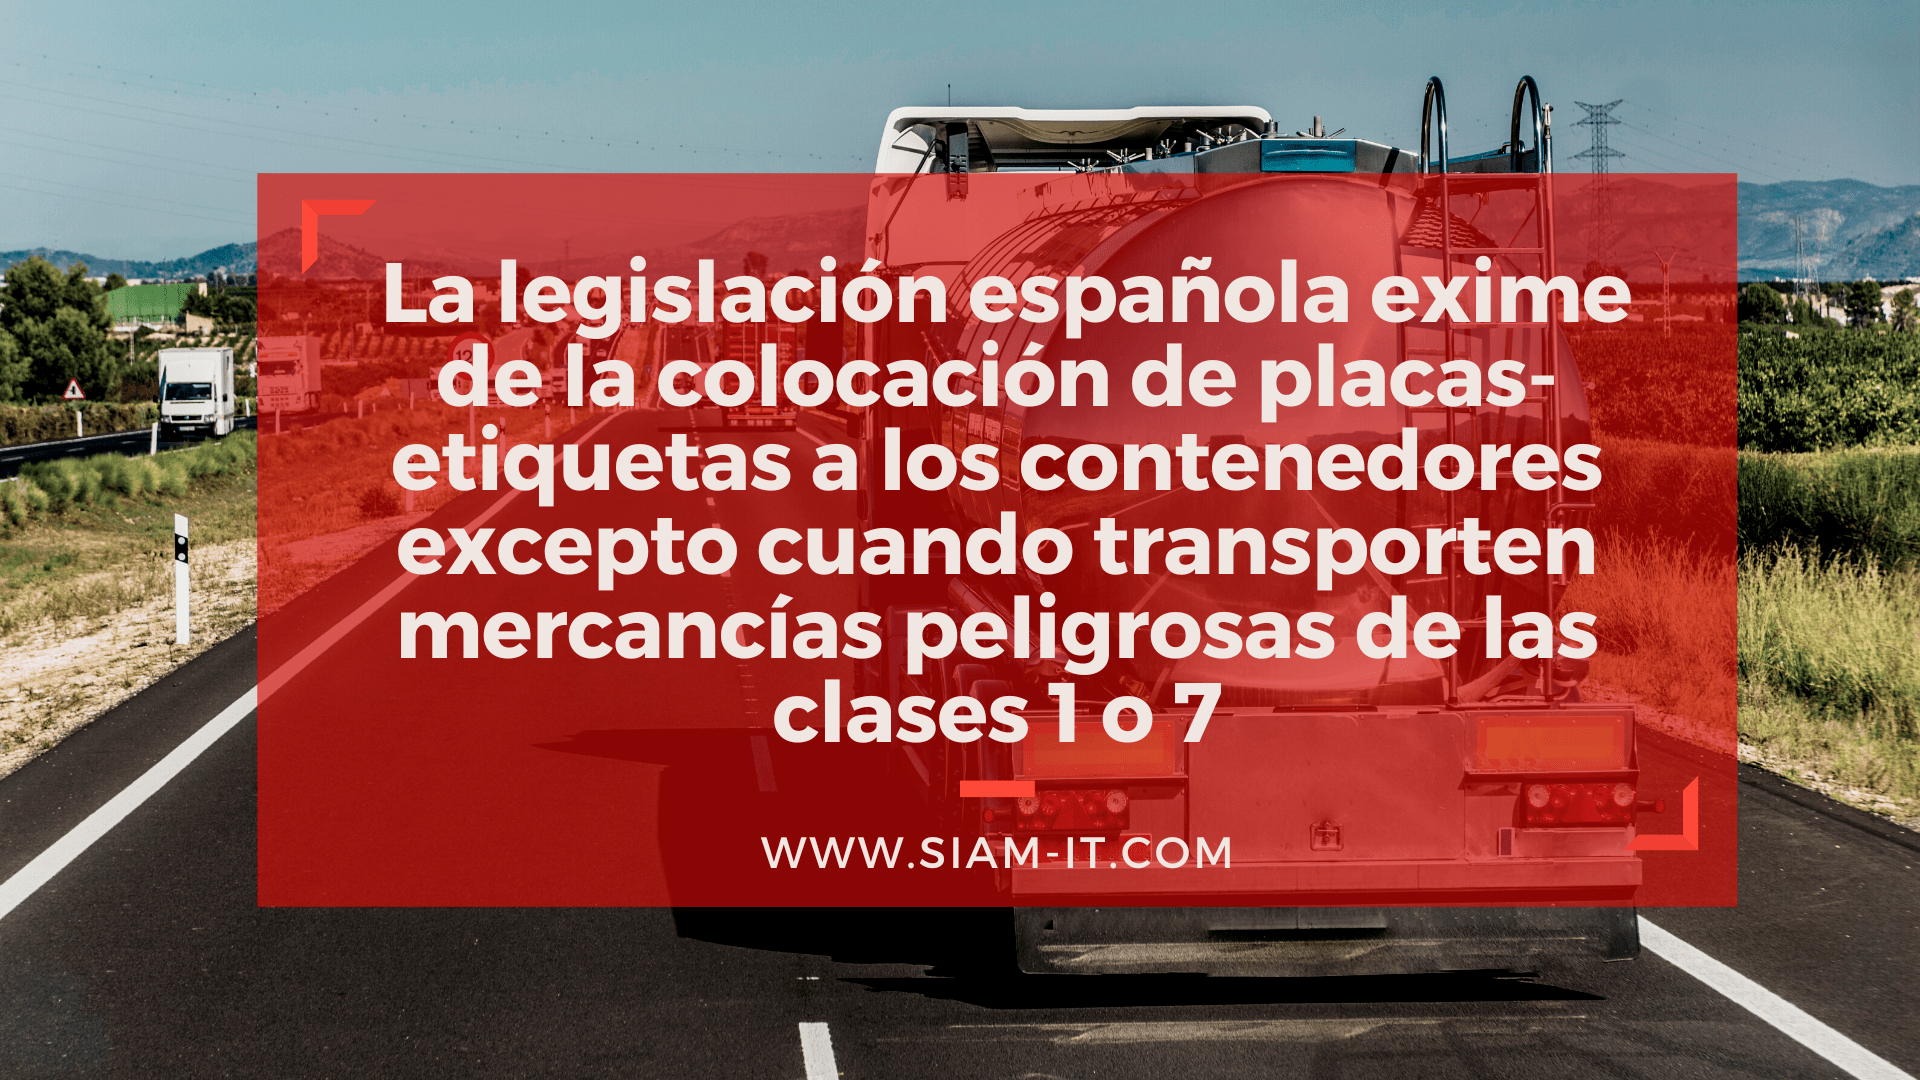 España incorpora nuevas excepciones nacionales a la directiva europea sobre el transporte terrestre de mercancías peligrosas